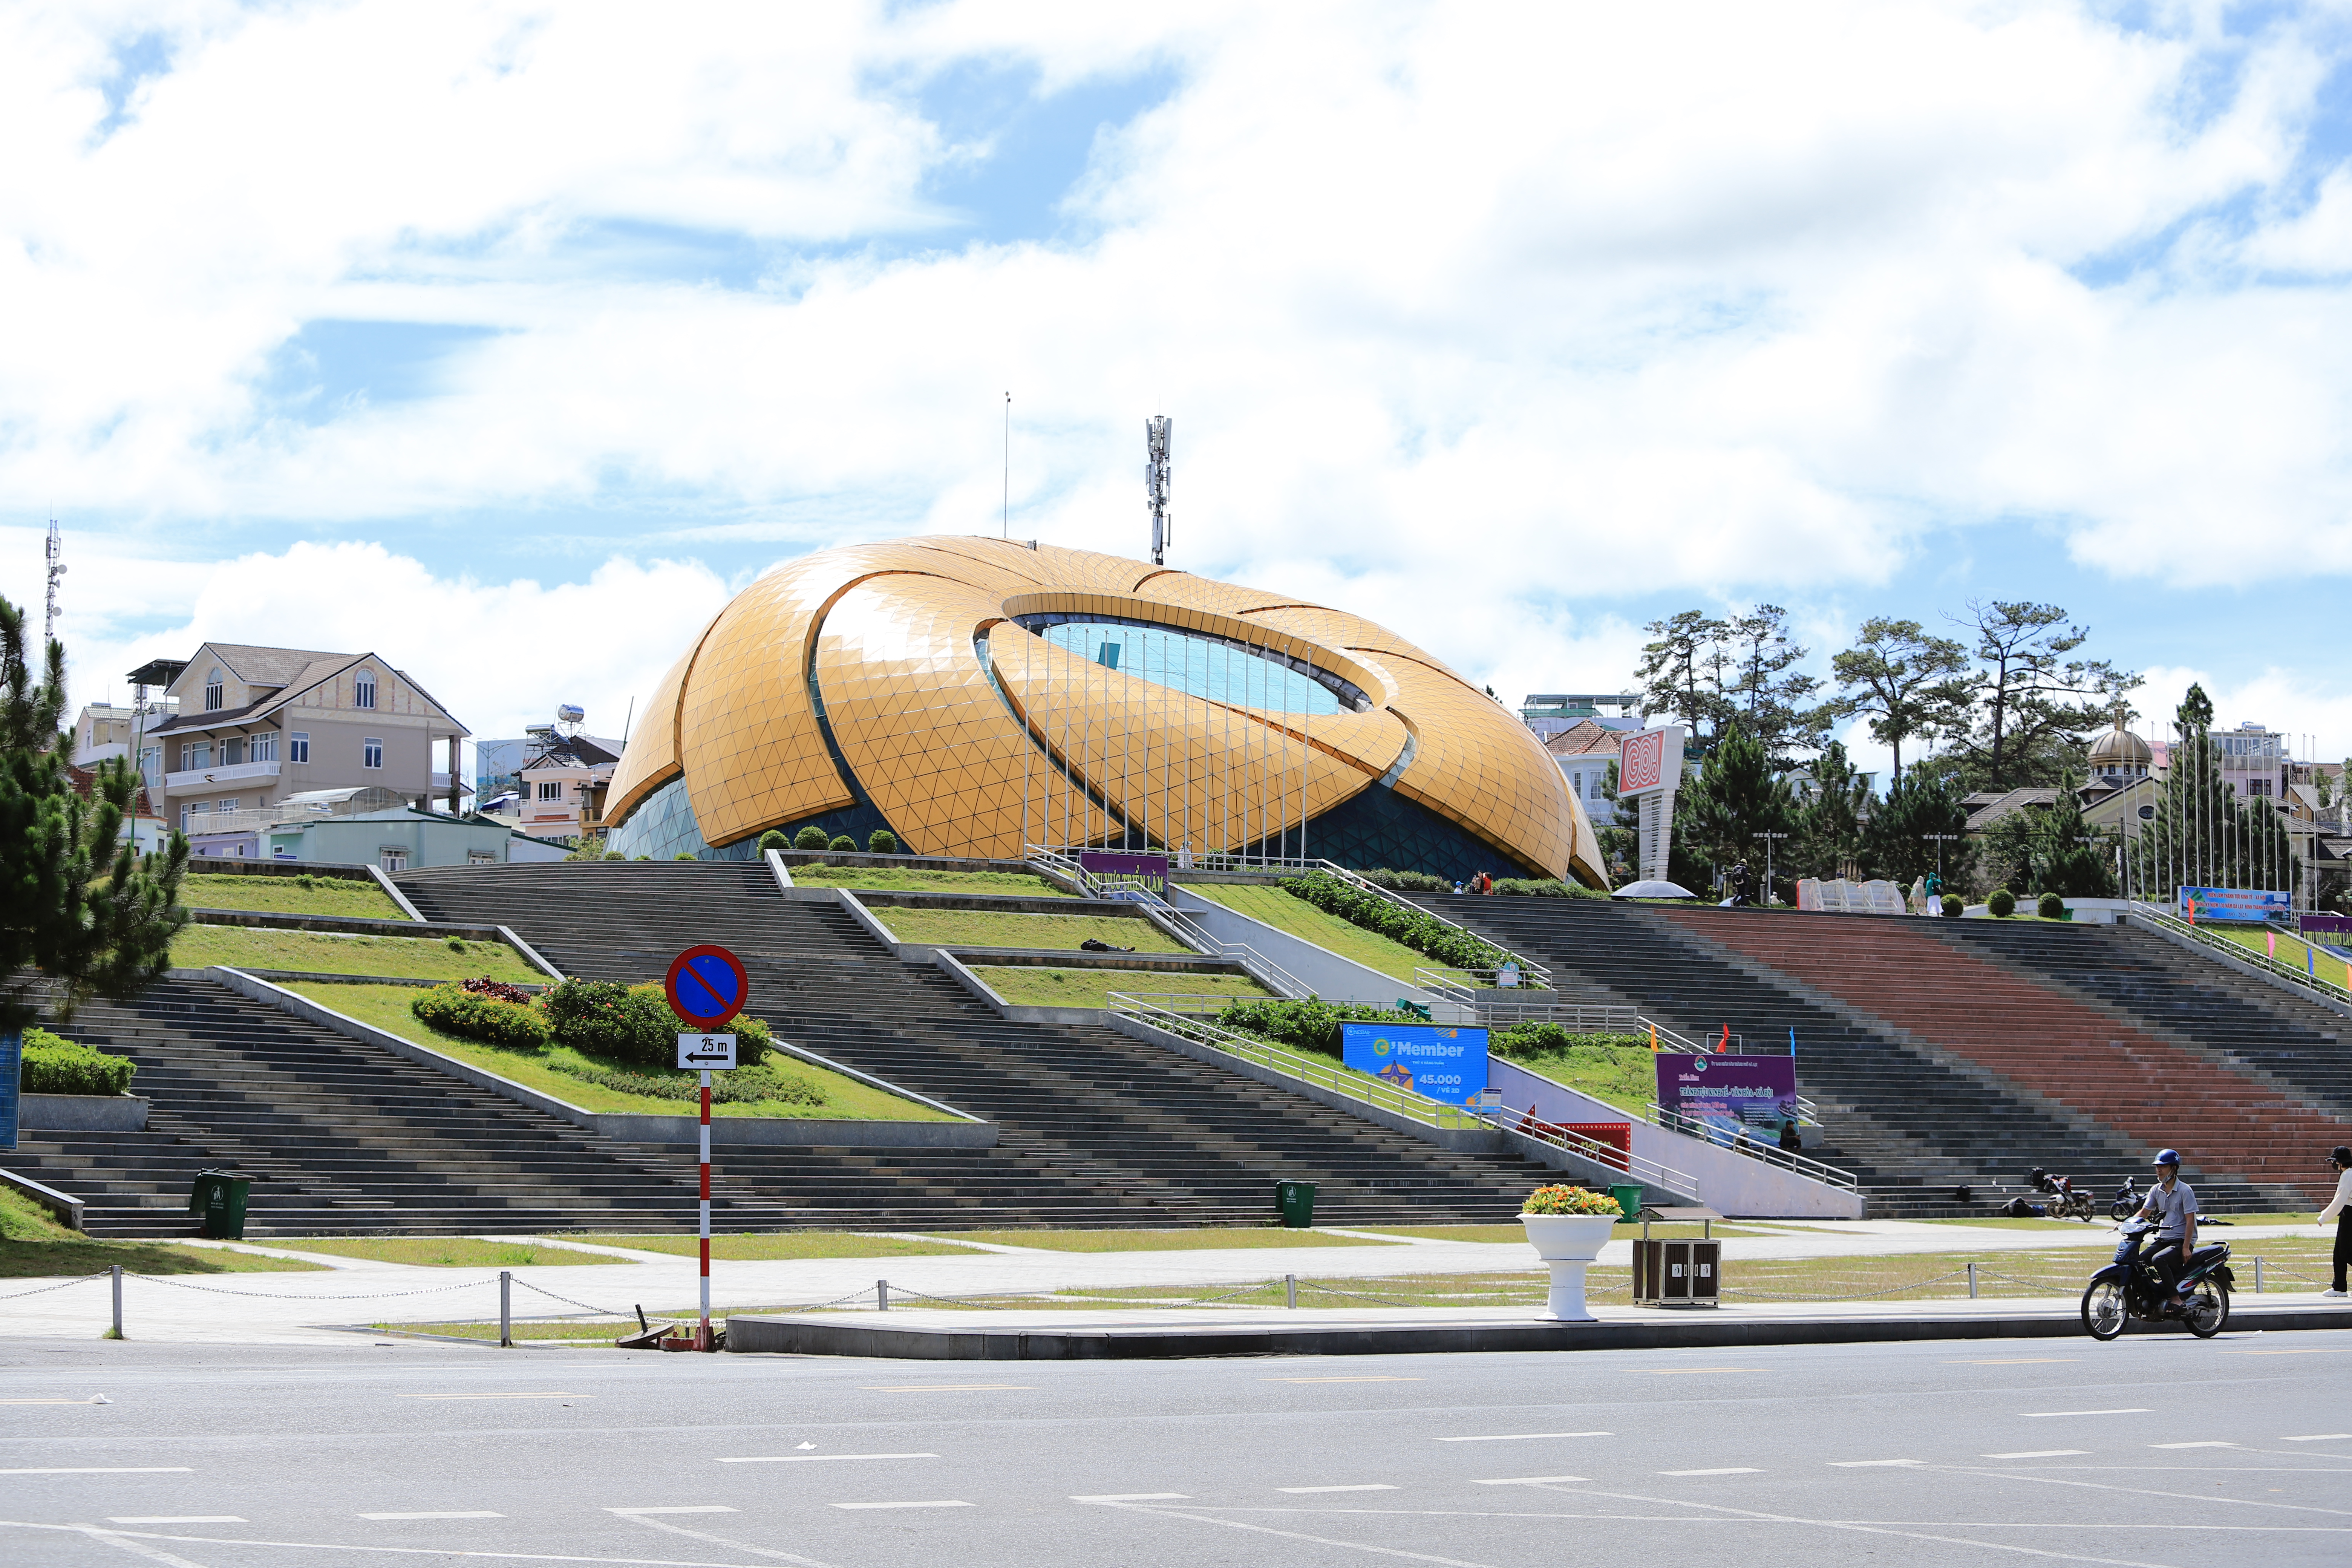 Quảng trường Lâm Viên ở Đà Lạt được xây dựng từ năm 2009, phải thi công mất 6 năm công trình này mới hoàn thành và đi vào hoạt động vào năm 2016.